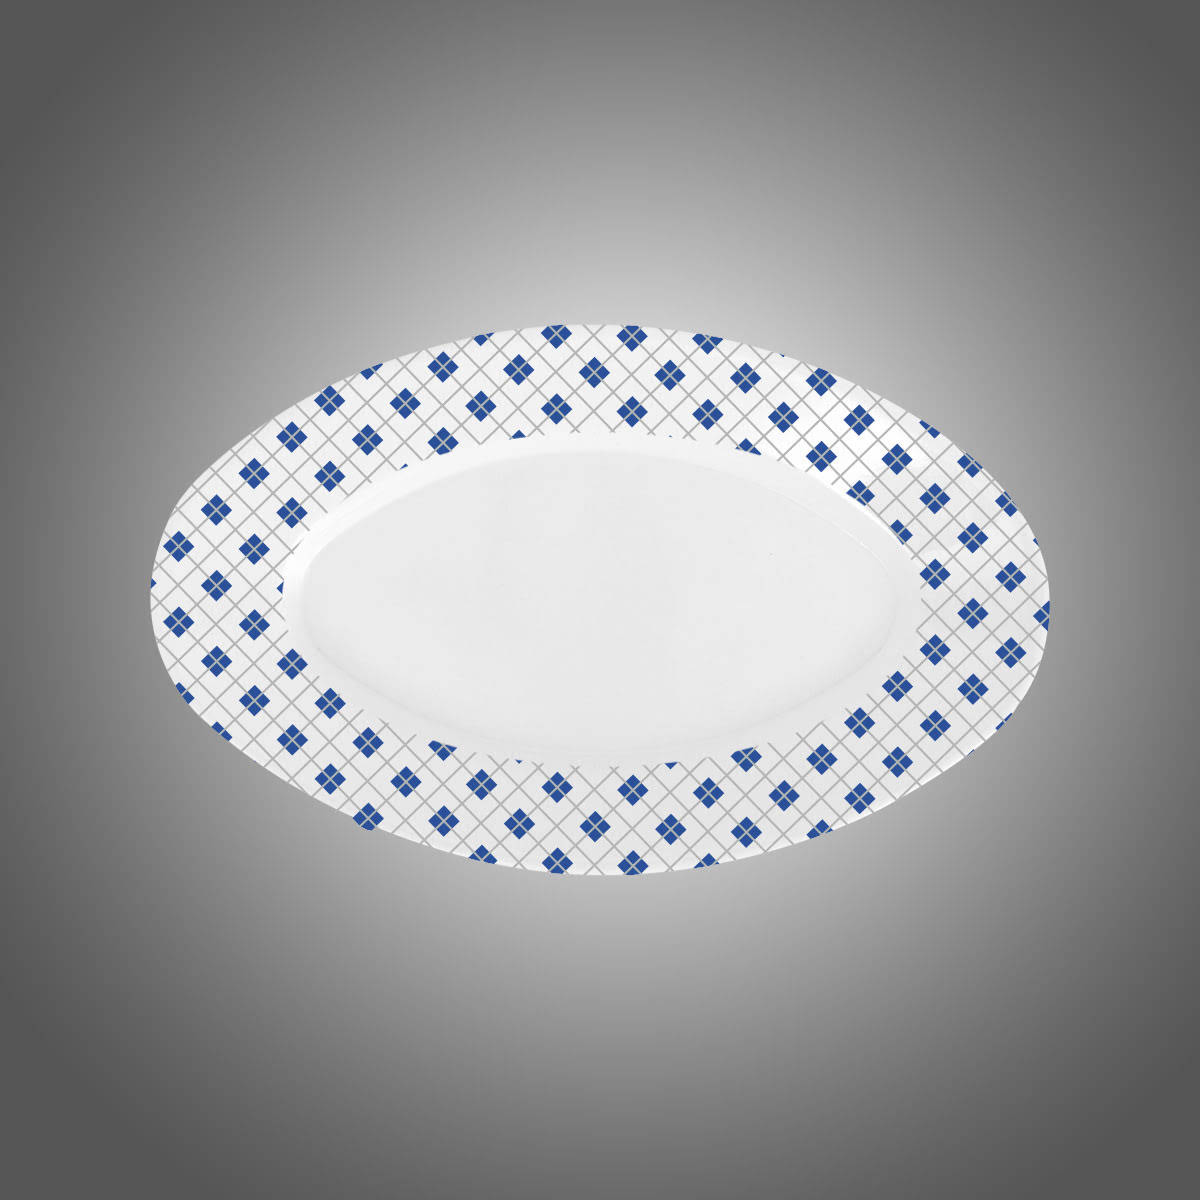 21 cm x 34 cm ölçülerinde melaminden üretilmiş beyaz ve desenli kayık tabak